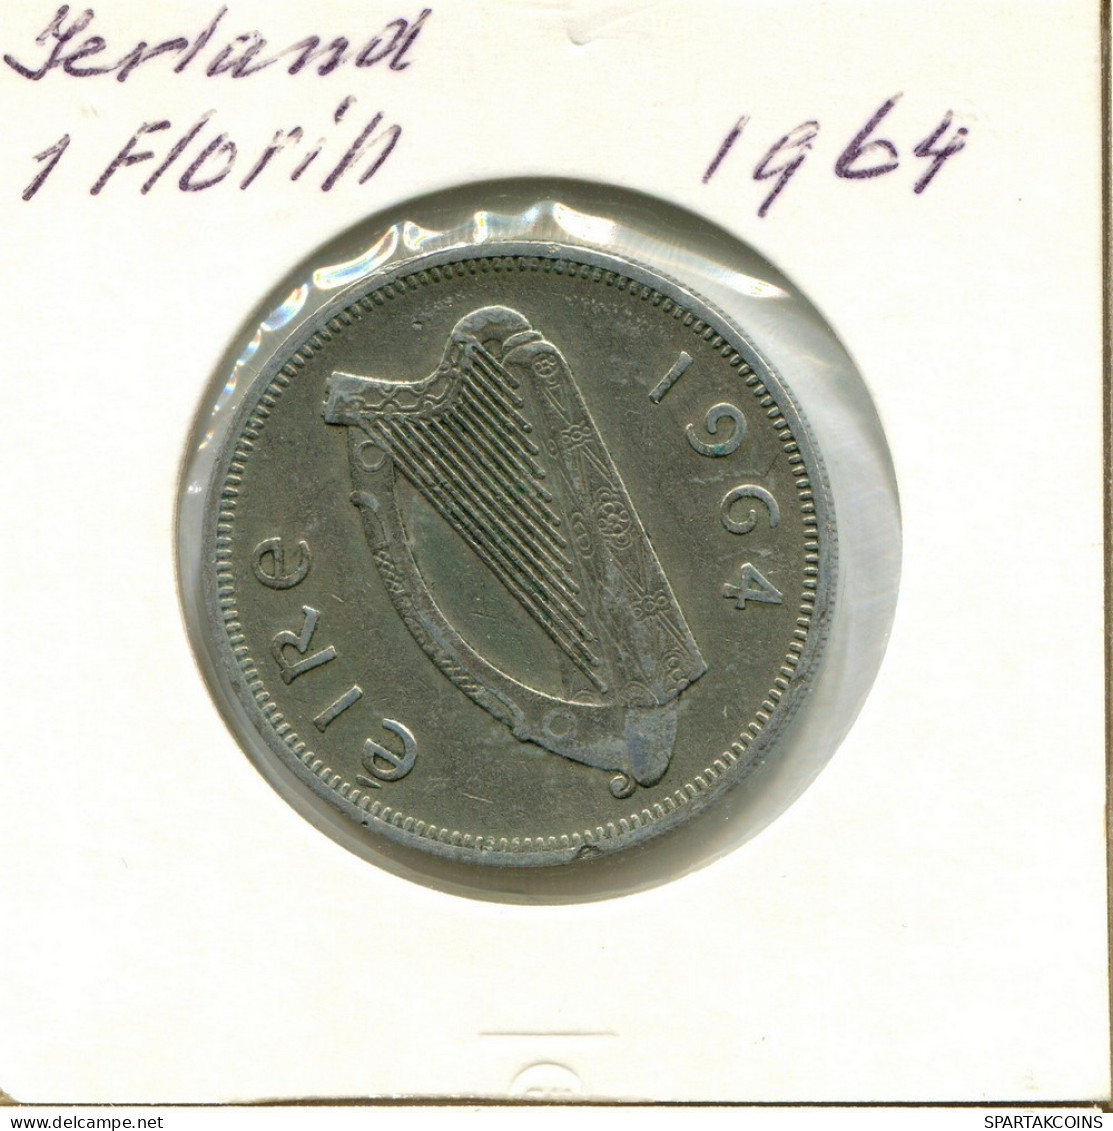 1 FLORIN 1964 IRLAND IRELAND Münze #AY711.D.A - Ierland